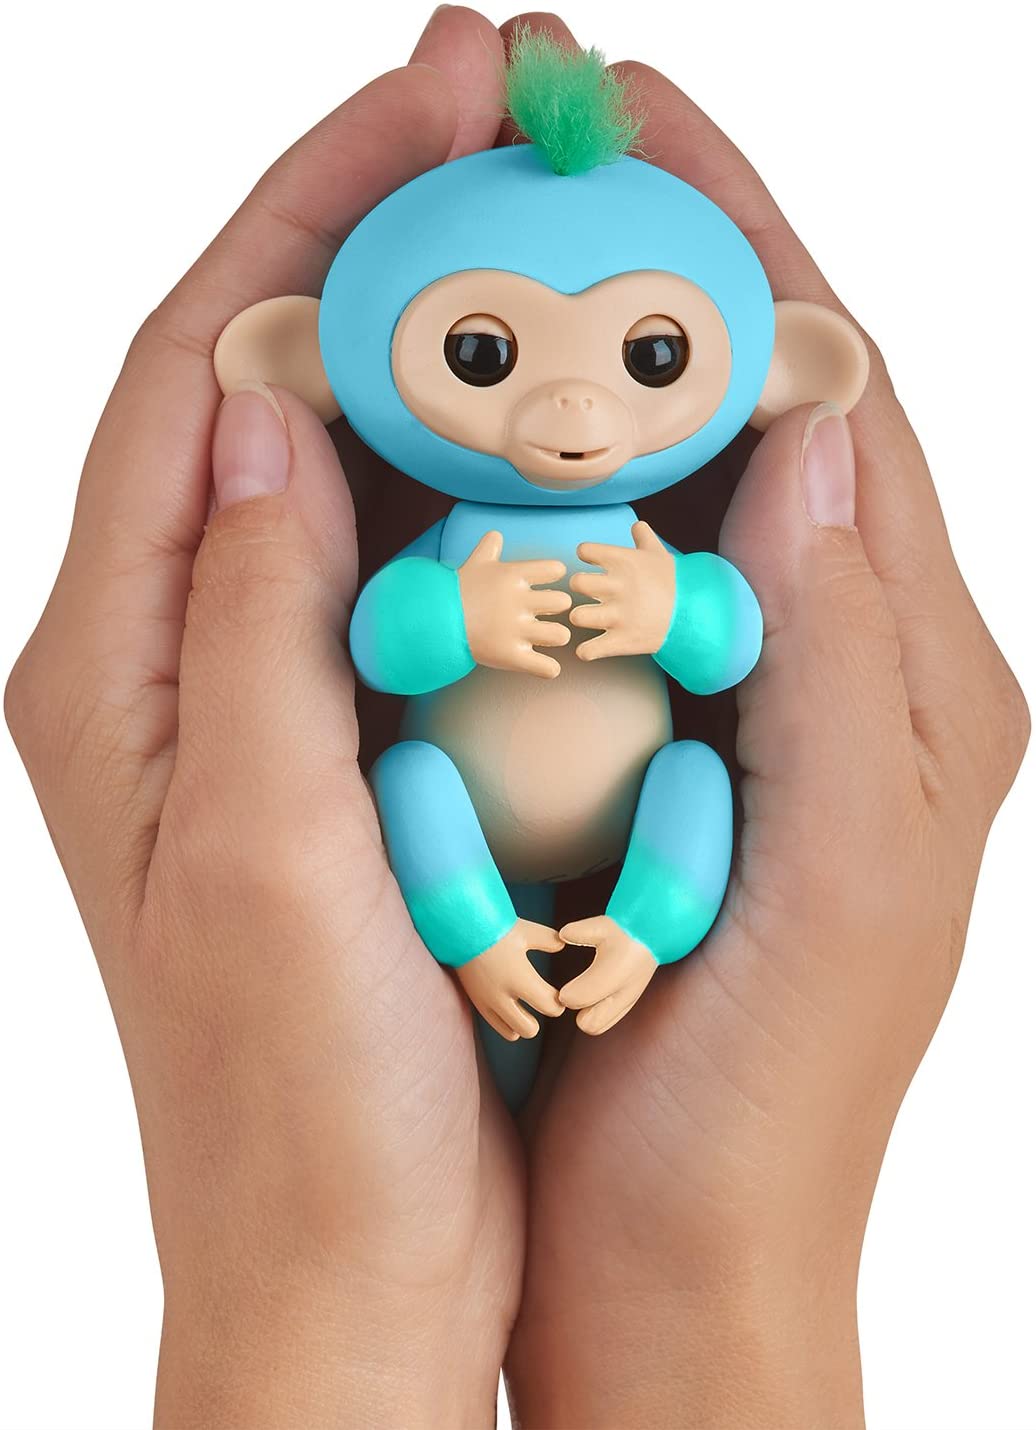 Fingerlings 2 Tone Monkey - Charlie (blu con accenti verdi) - Animale domestico interattivo